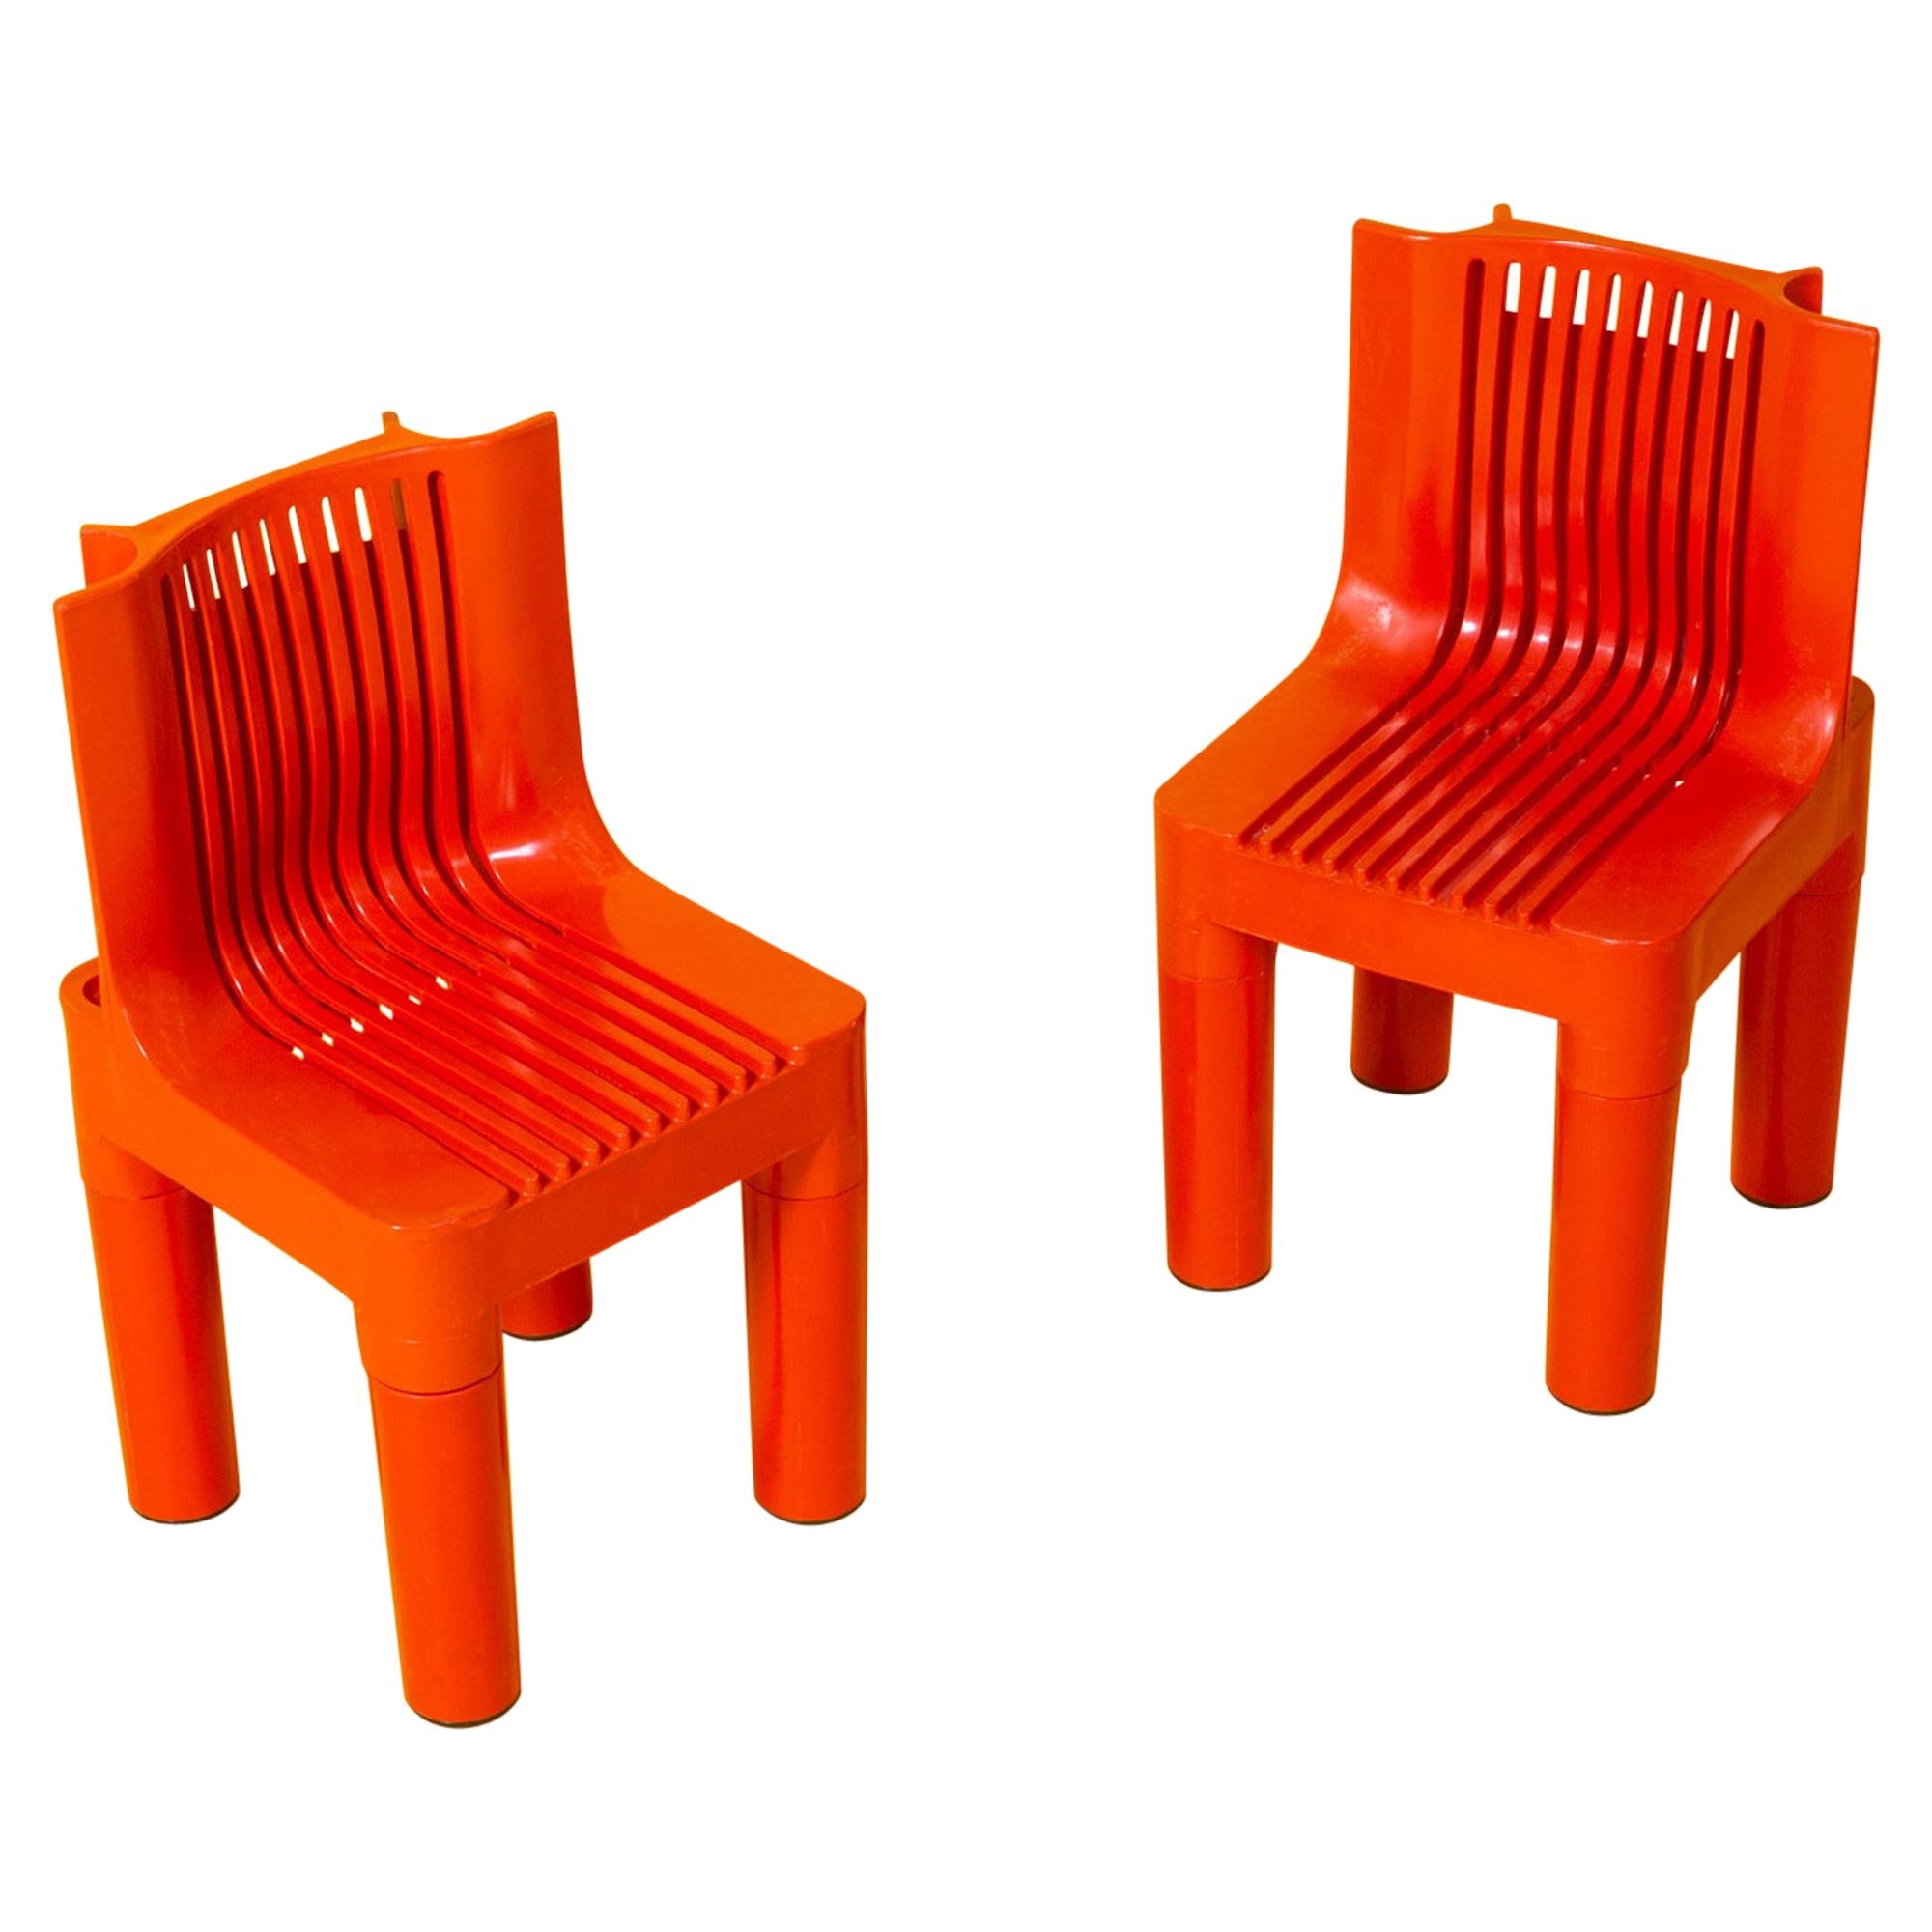 Pair of K4999 Richard Sapper for Kartell Child's Chair